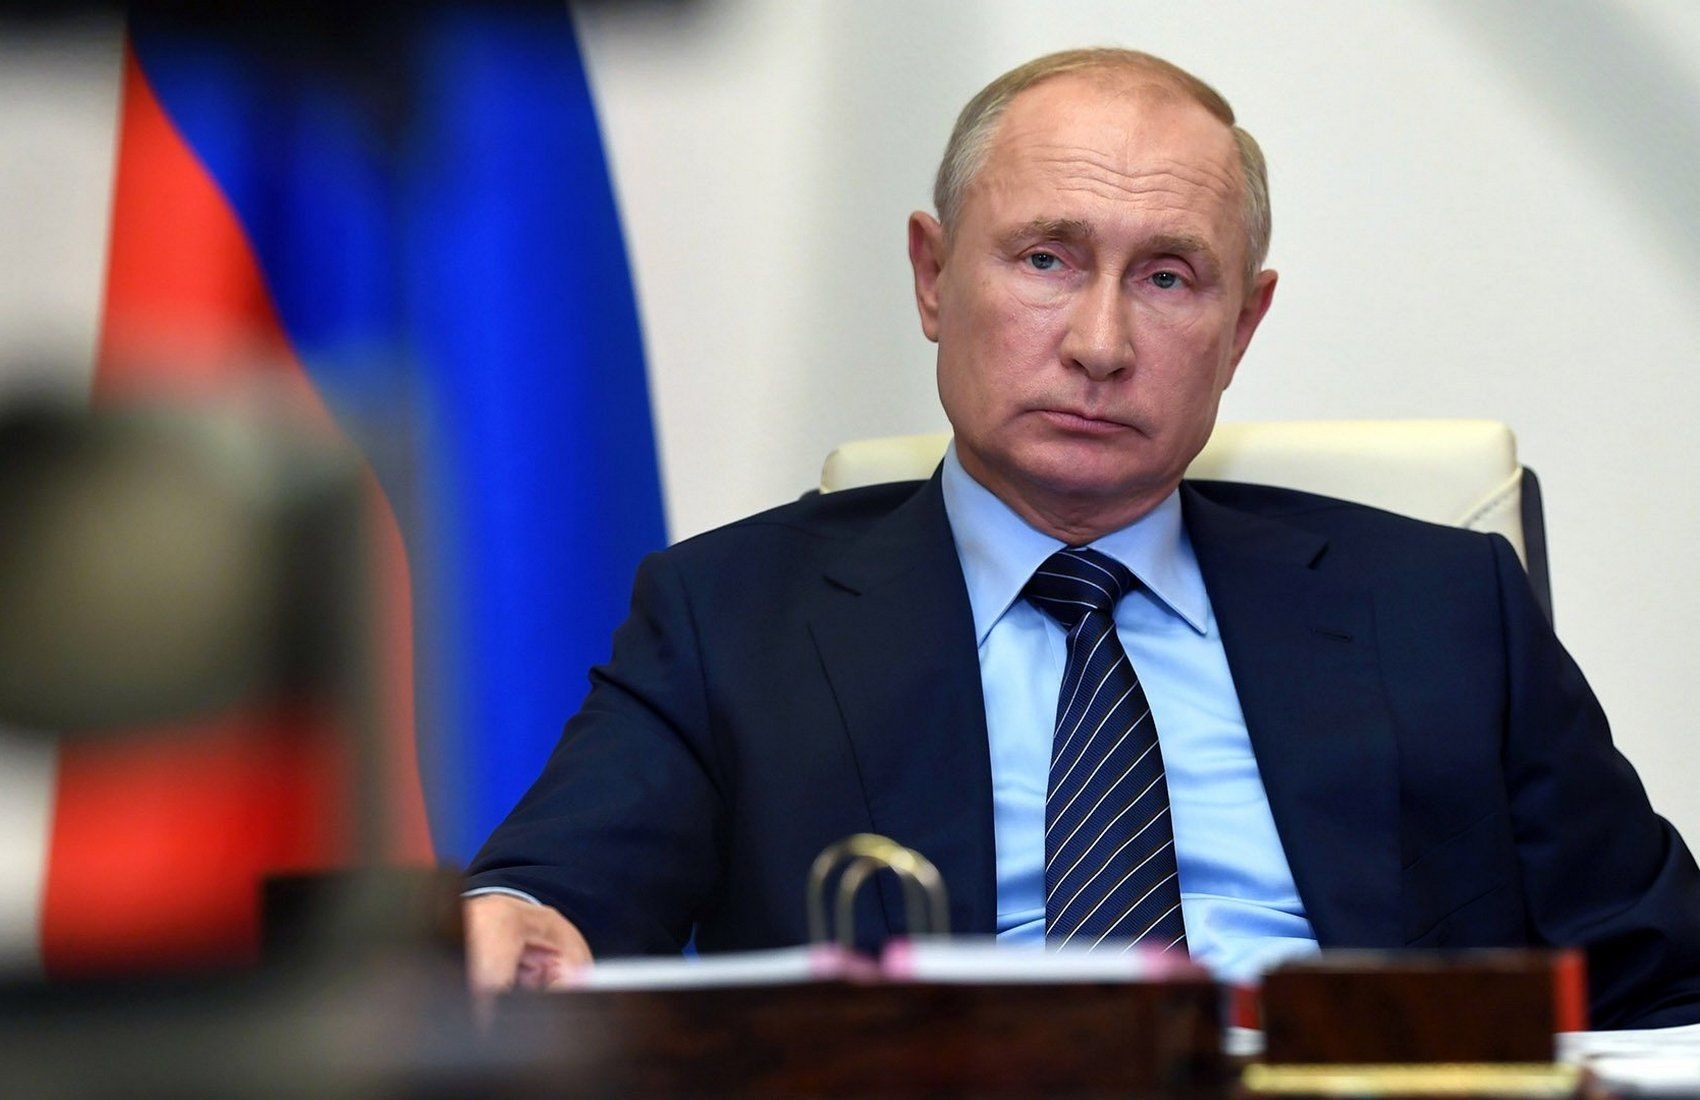 Песков: решение об участии Путина в саммите БРИКС в ЮАР пока не принималось